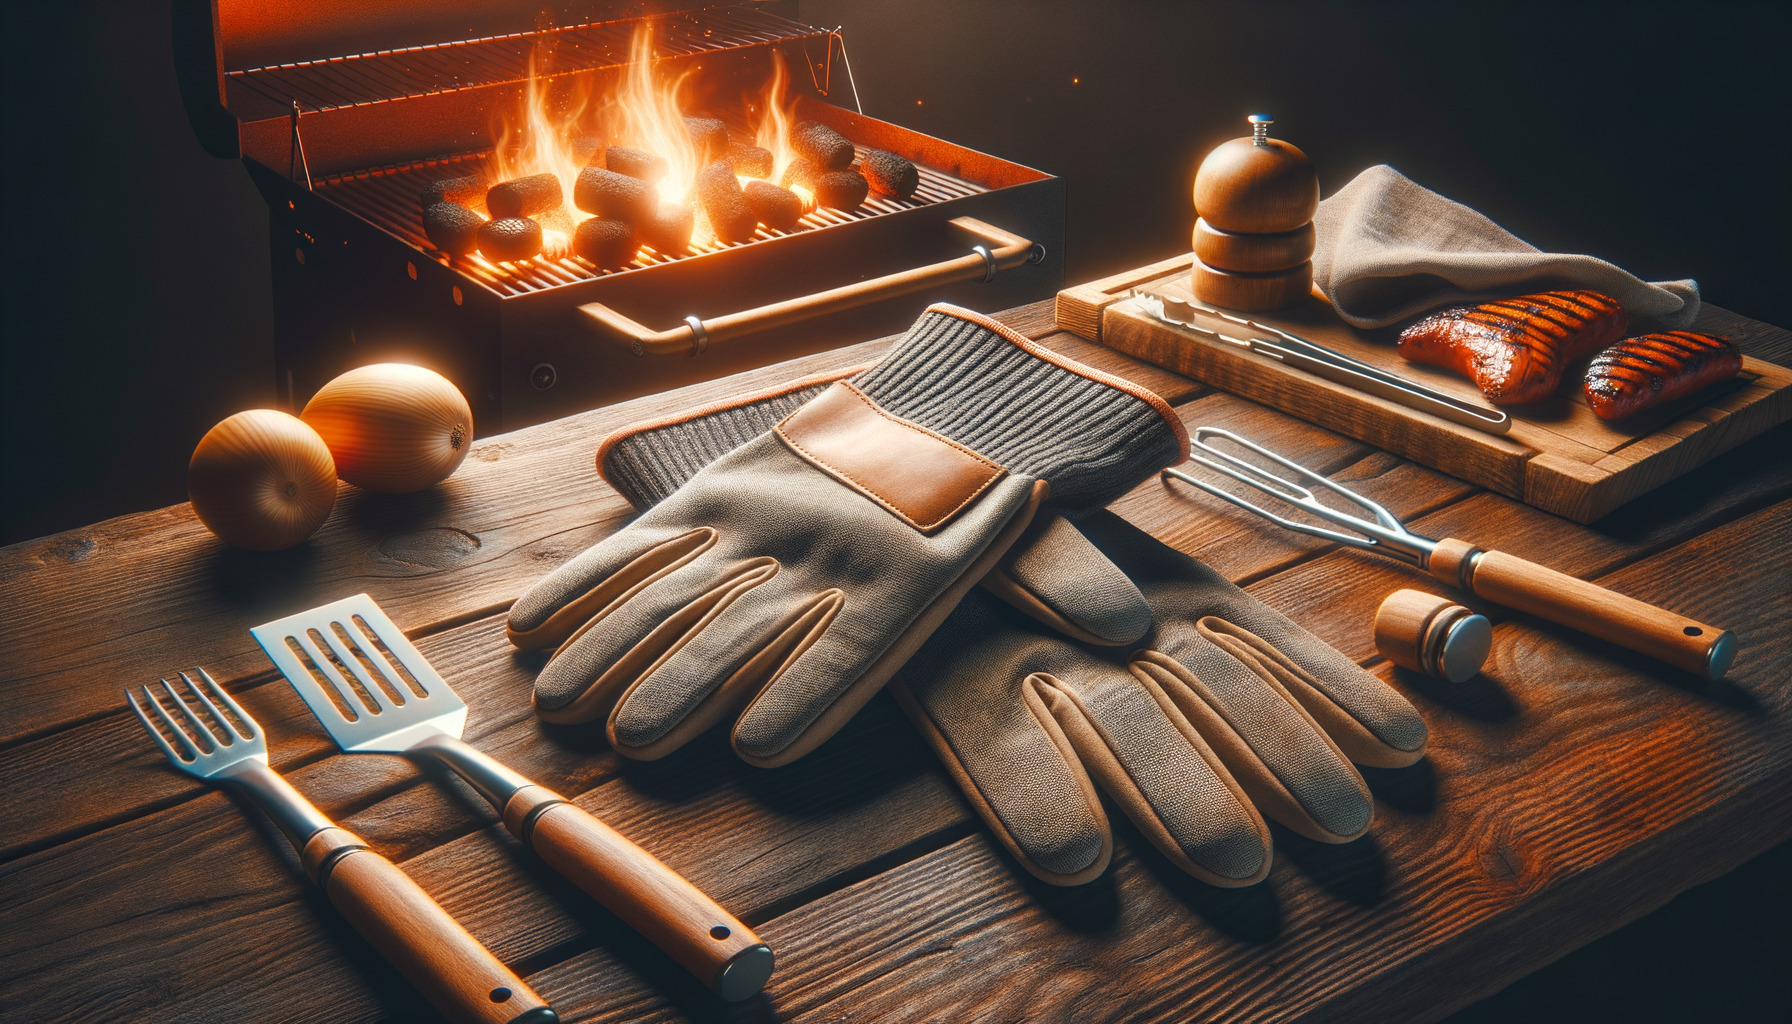 SPGOOD Grillhandschuhe hitzebeständig Grillhandschuh 800 Grad feuerfeste  Handschuhe Kochhandschuhe Backhandschuhe für Küche & Grill BBQ